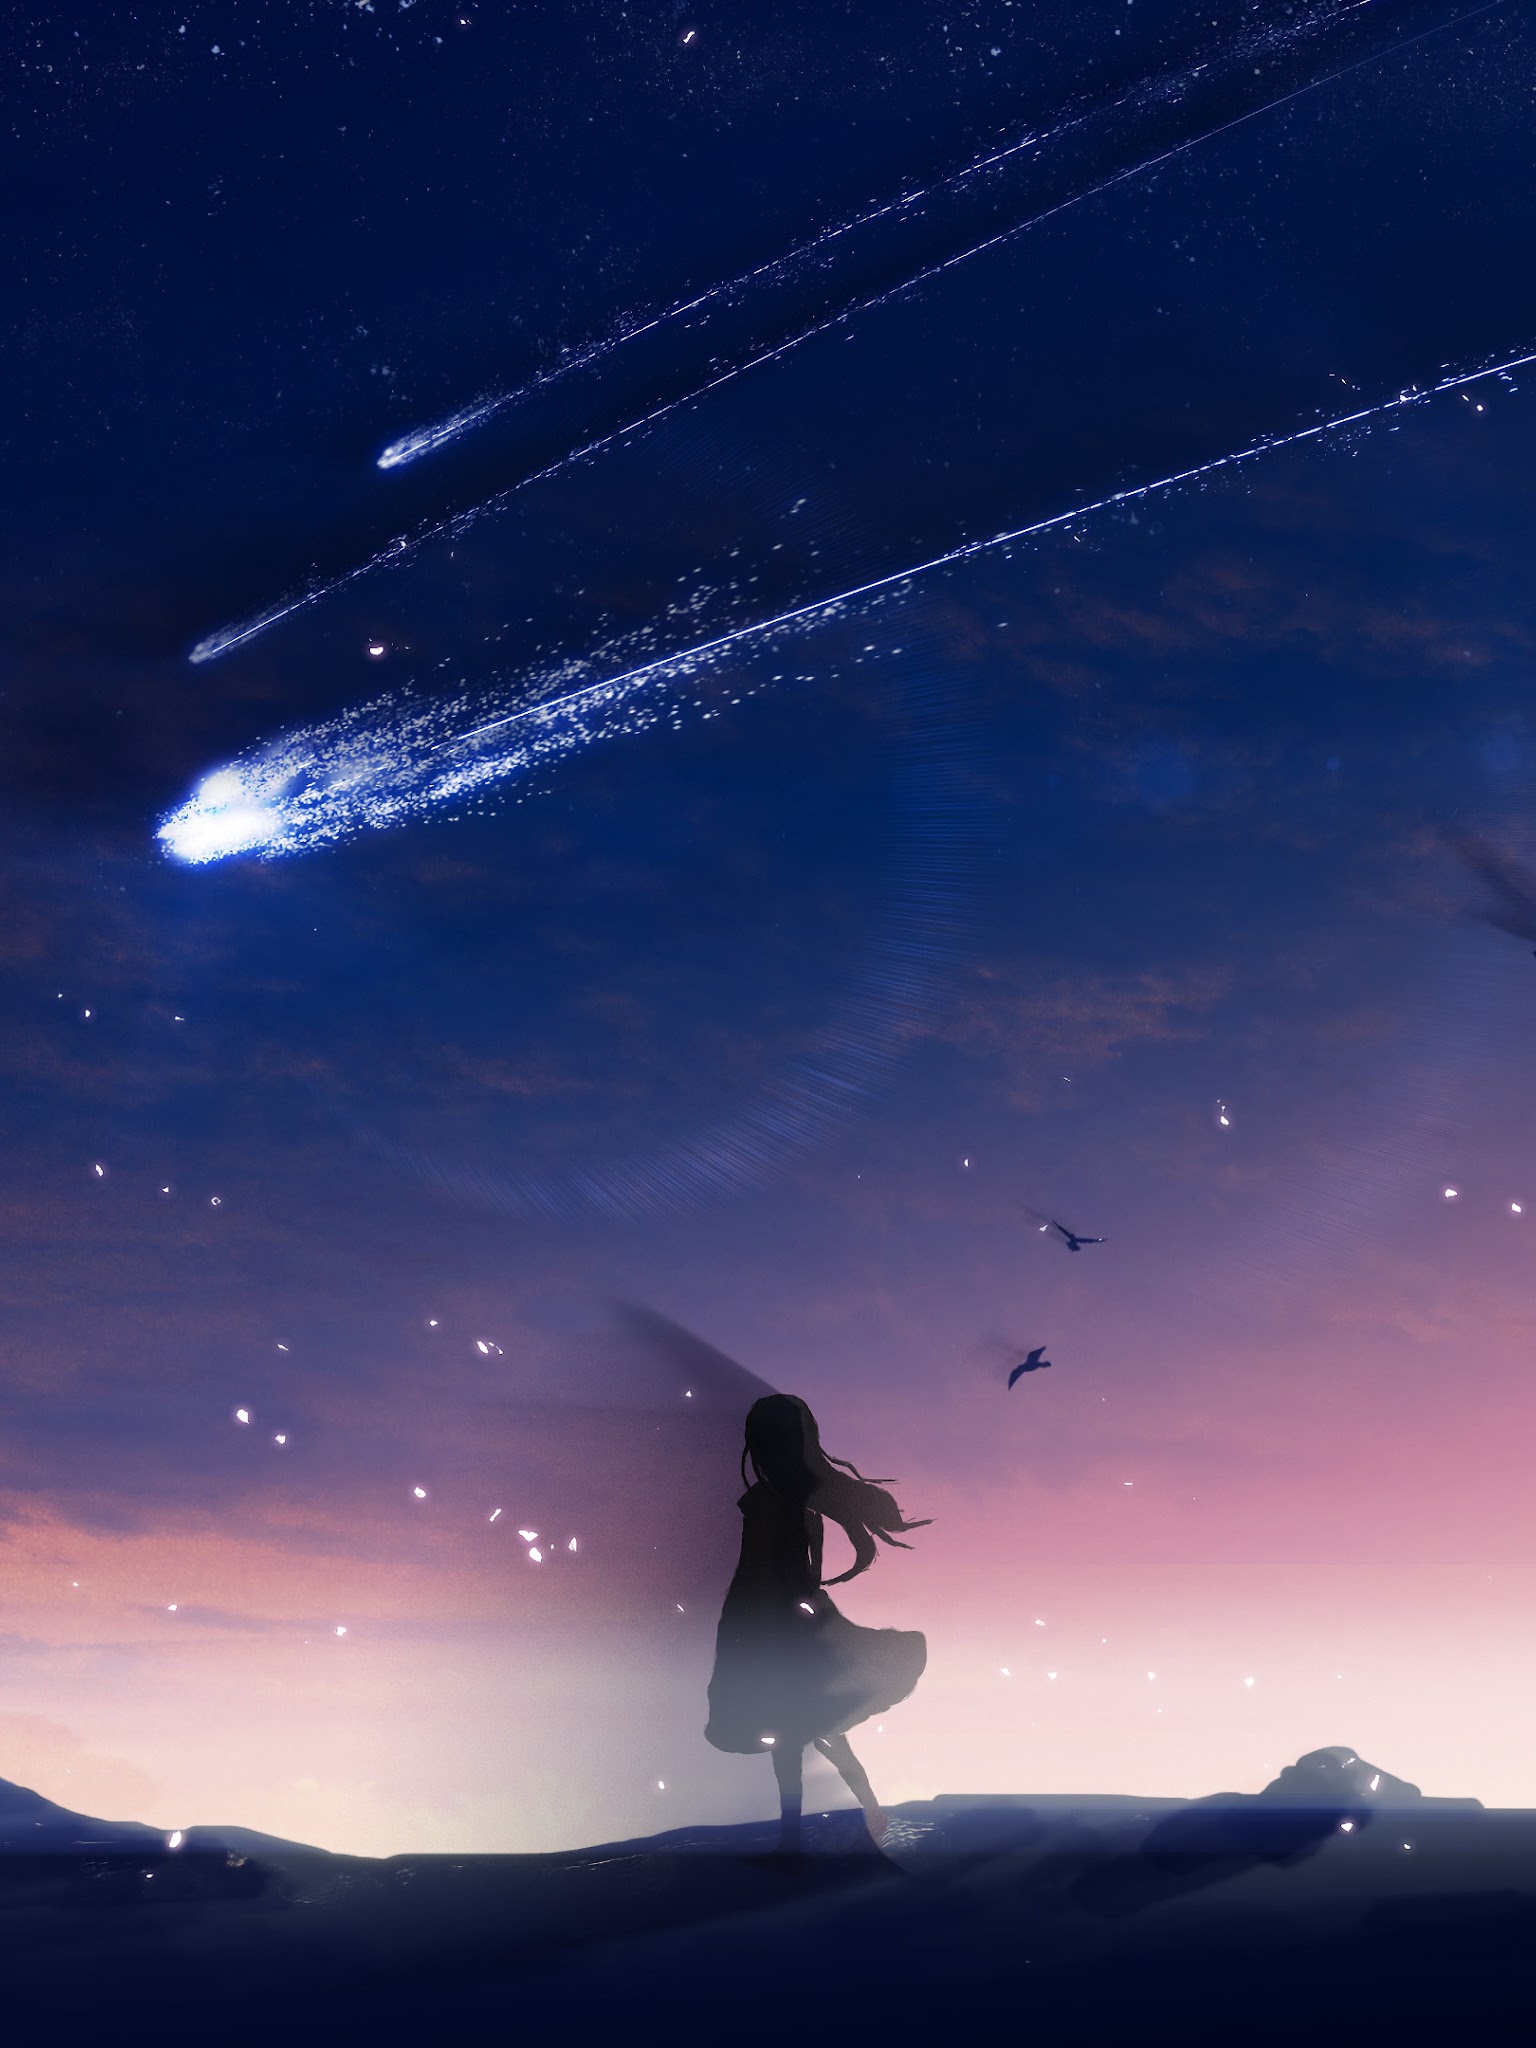 Hình nền anime đêm bầu trời đầy sao và bầu trời tuyệt đẹp, những ngôi sao lấp lánh huyền ảo cùng nhân vật anime kỳ dị tạo nên không gian đầy lãng mạn và đom đóm. Xem ngay để khám phá hình ảnh lãng mạn tuyệt đẹp này.